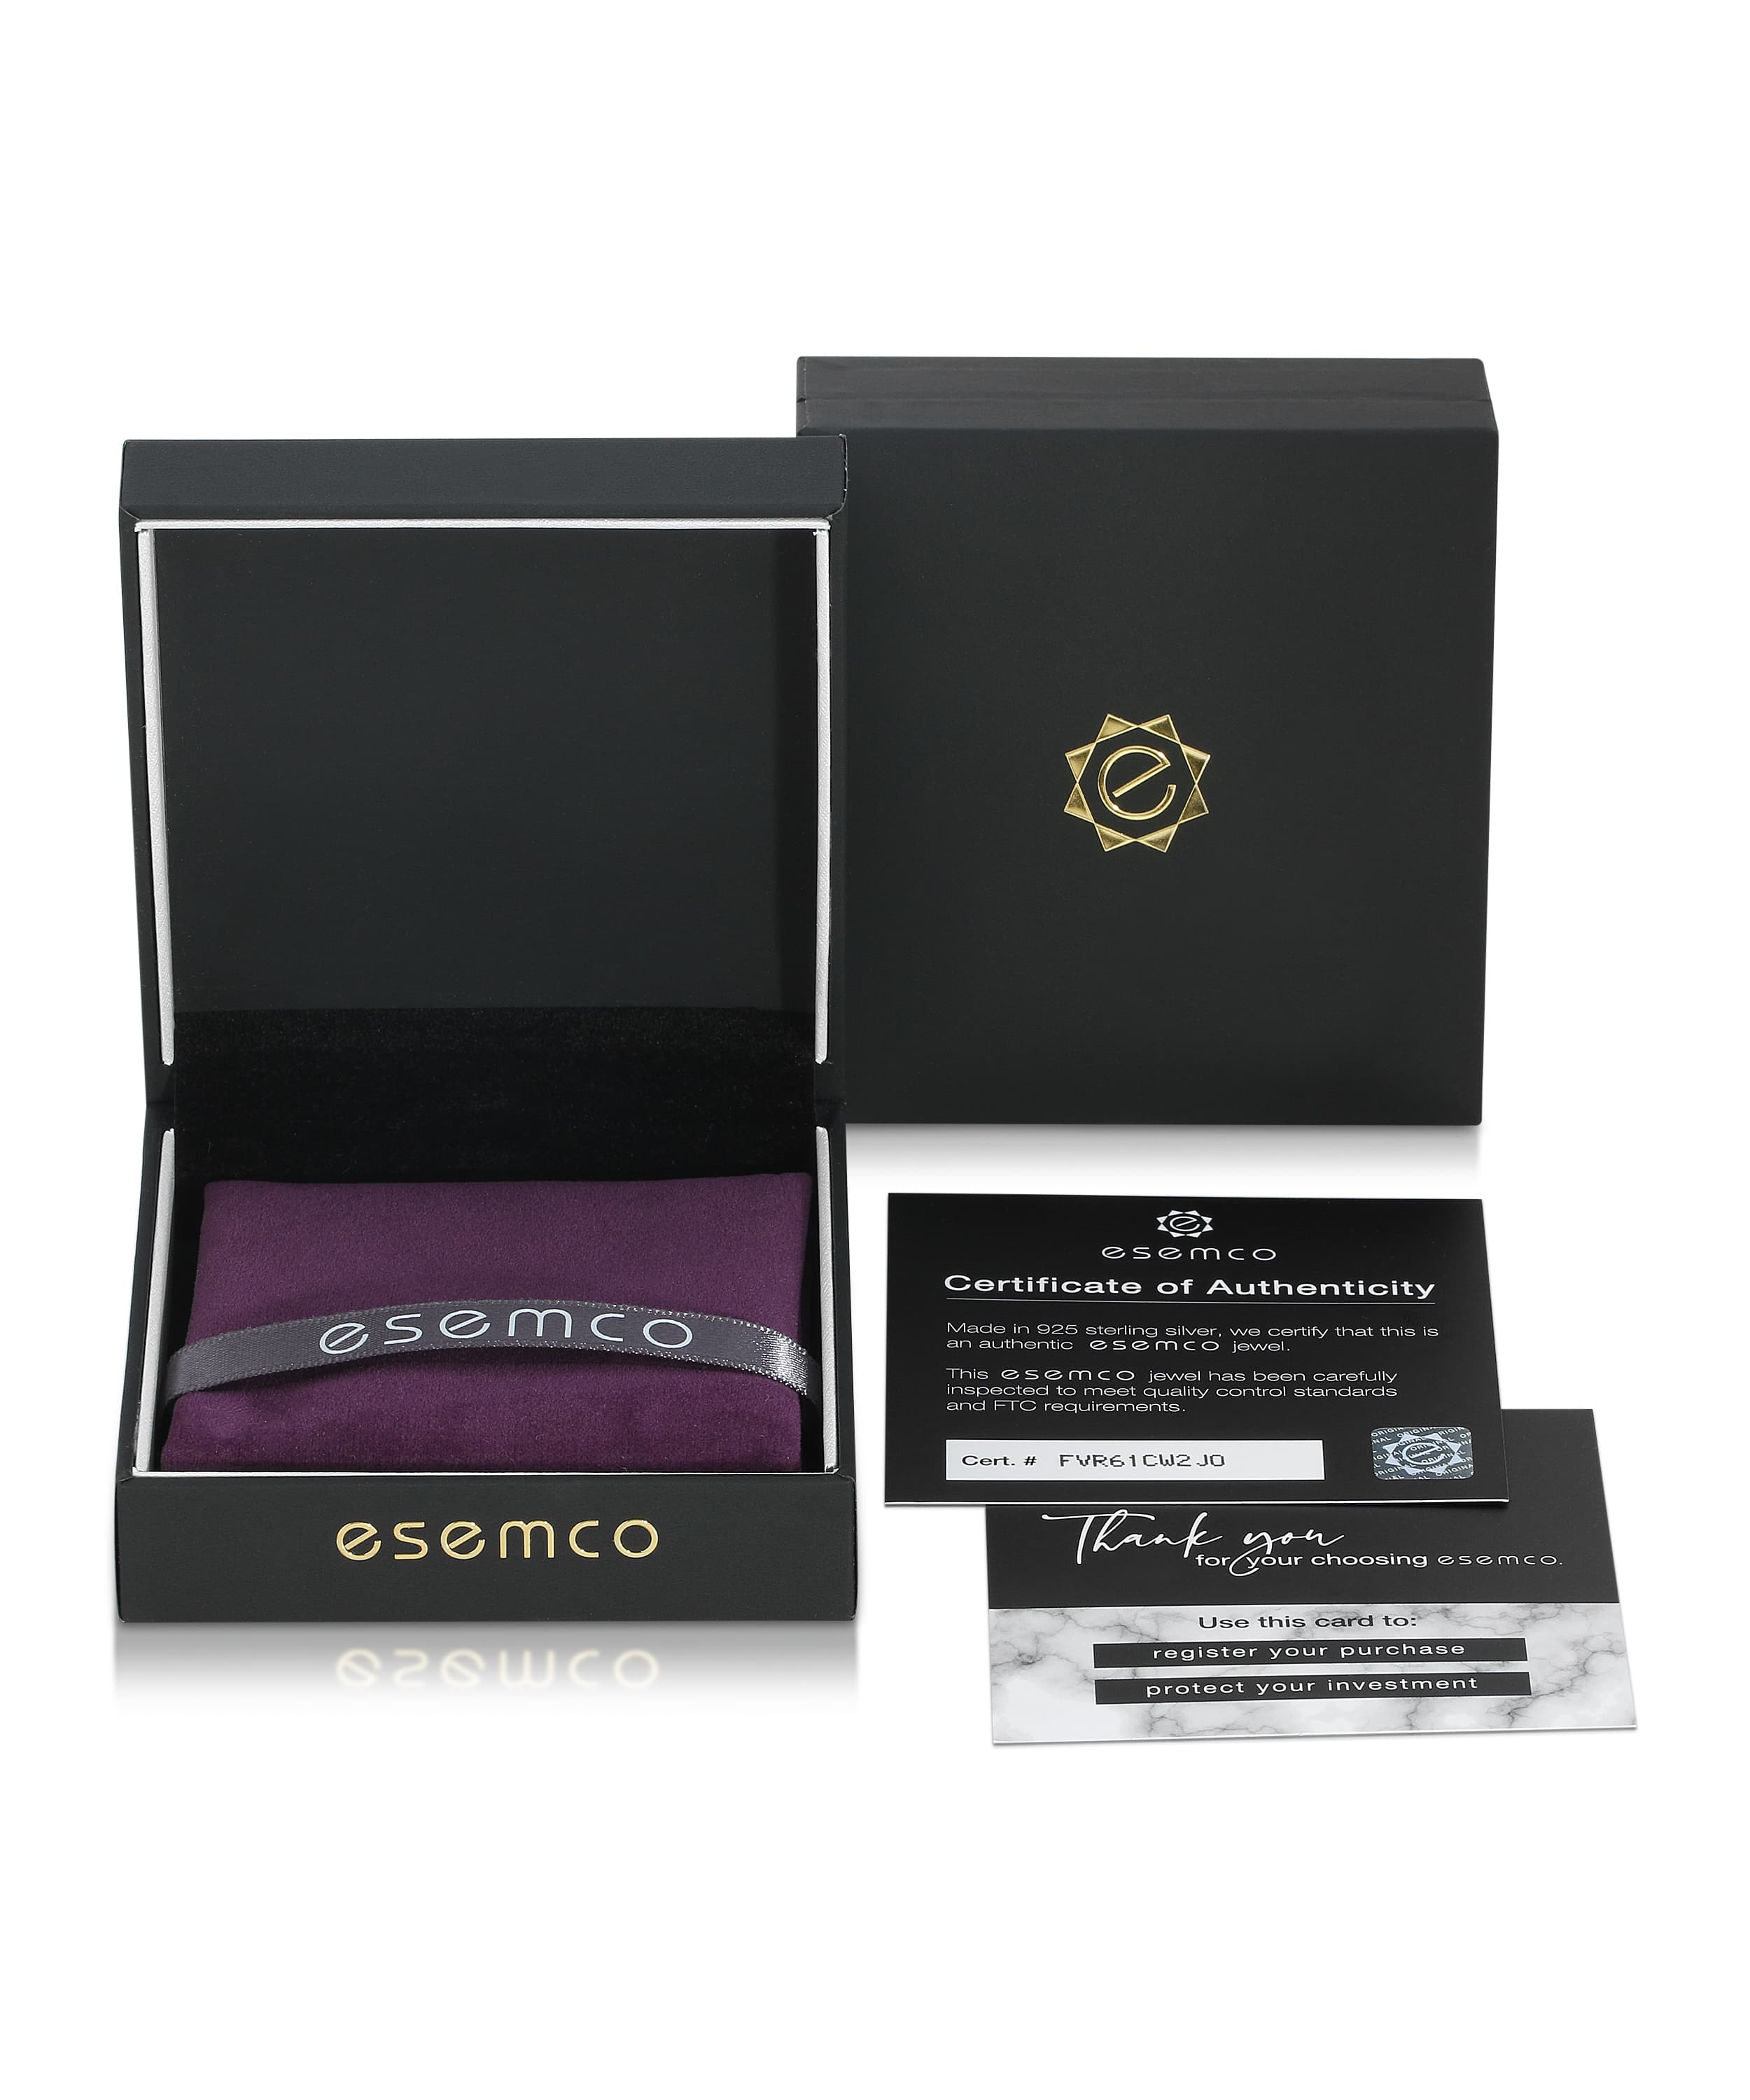 ESEMCO Diamond 18k White Gold Letter G Initial Open Ring View 4